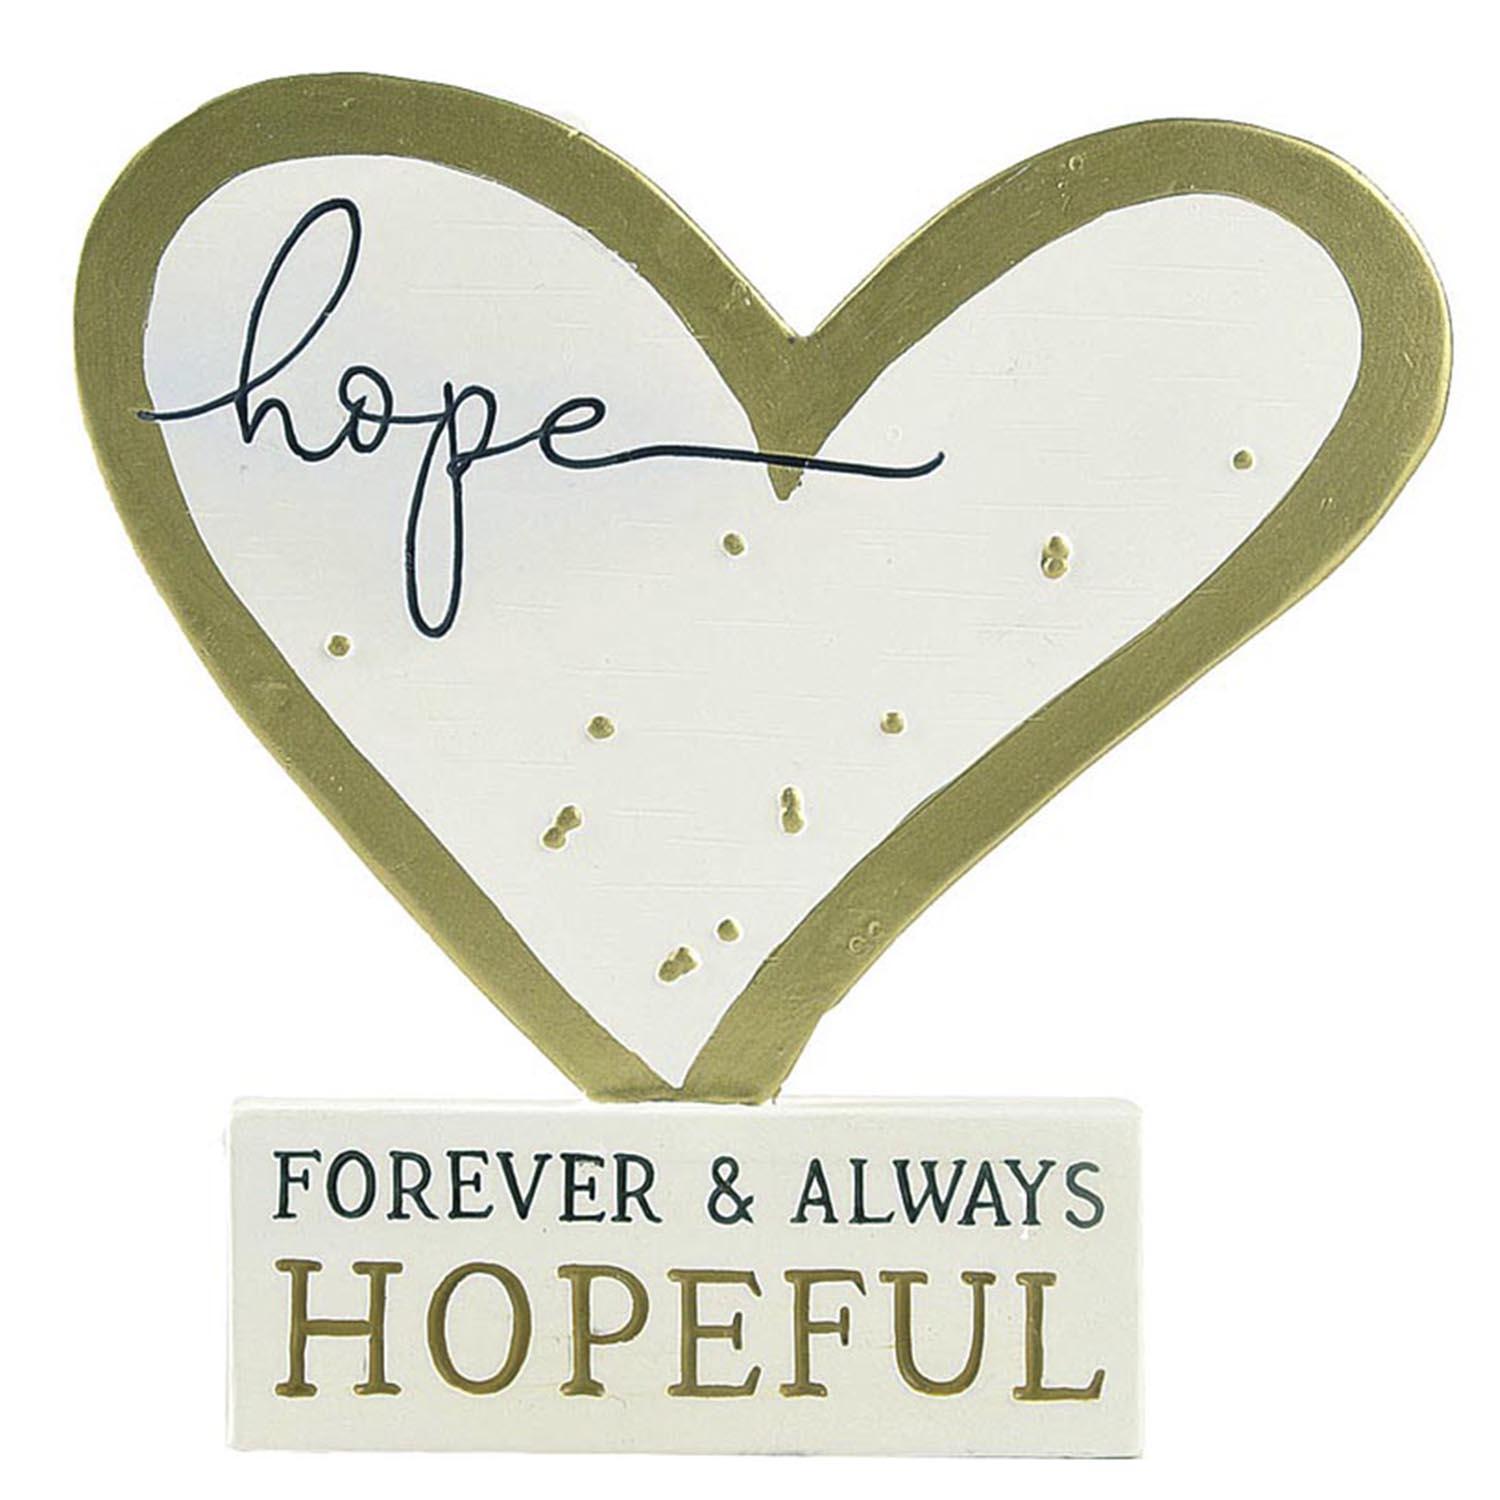 New Arrival 4.13”H ‘hope FOREVER & ALWAYS HOPEFUL’ Resin Letter Block Heart Shape with Golden Rim Plaque  211-12955